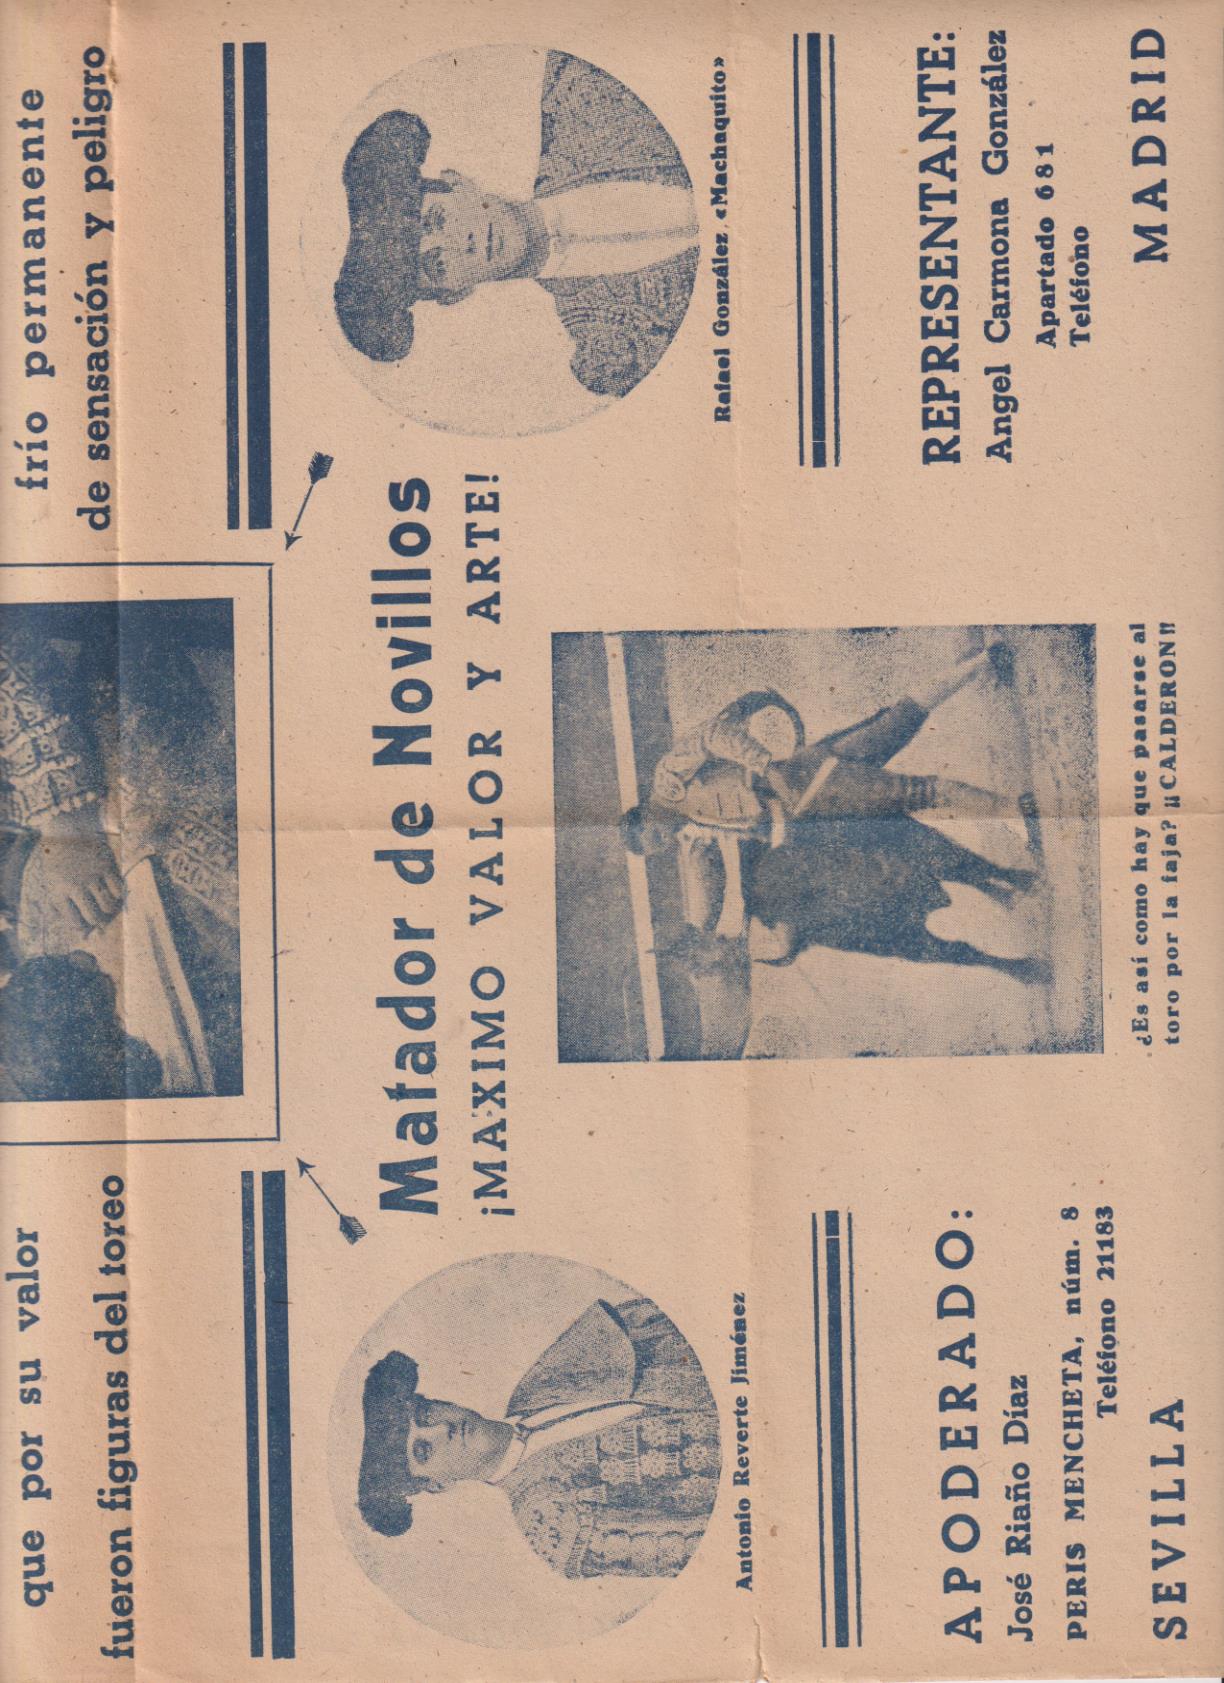 Cartel (43x30) Publicidad del Novillero Manuel Calderón de Alcalá de Guadaira